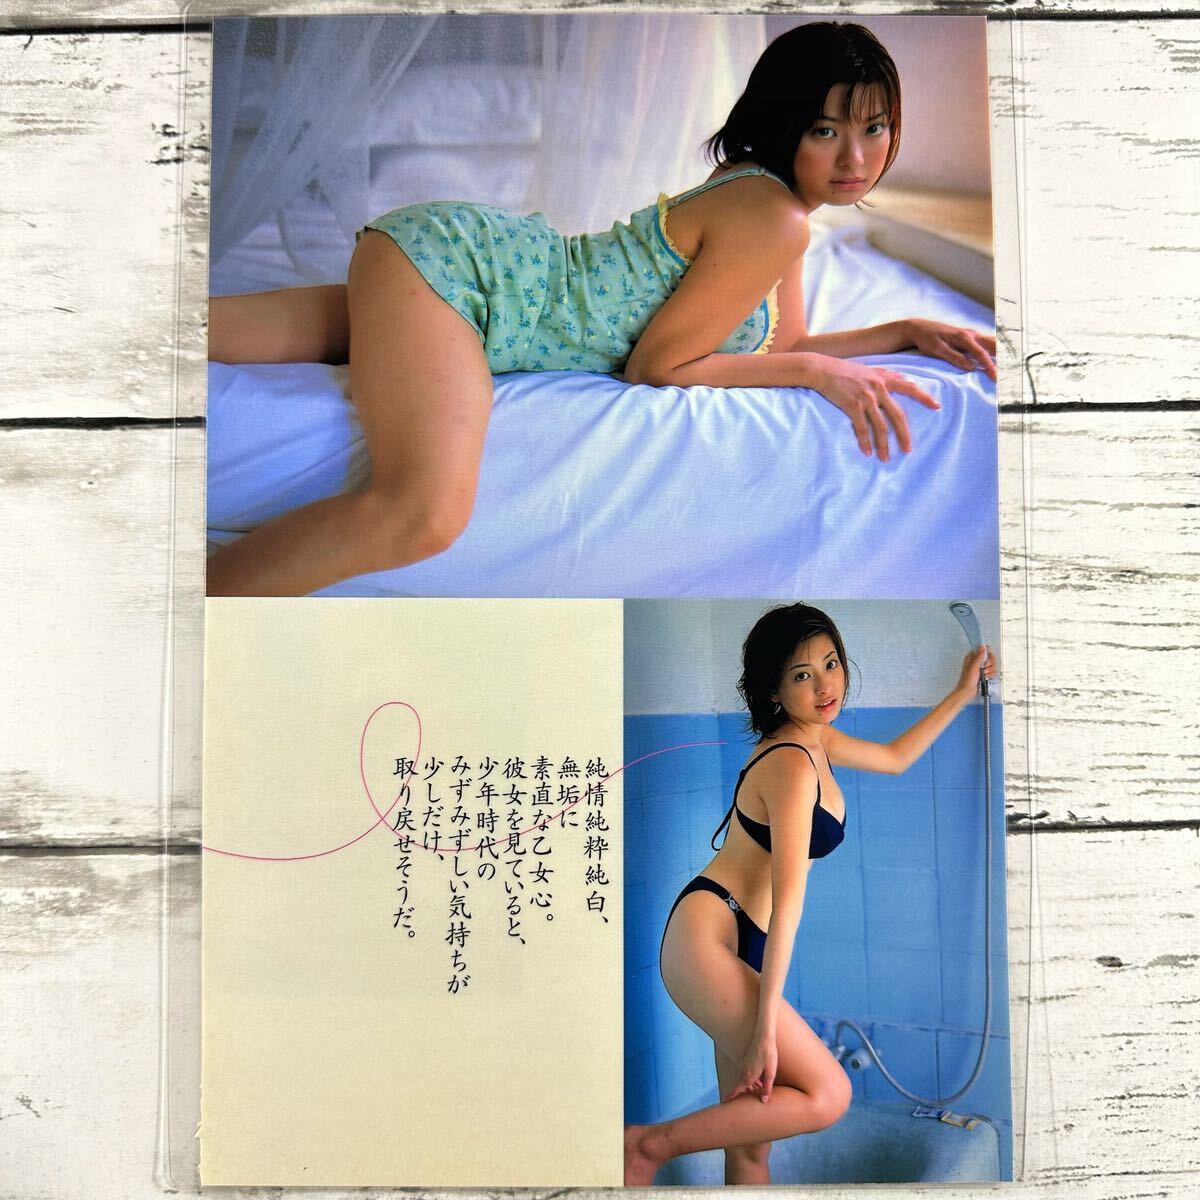 [ высокое качество ламинирование отделка ][ Otoba ] Play Boy 2000 год 51 номер журнал вырезки 7P B5 плёнка купальный костюм bikini model актер женщина super 